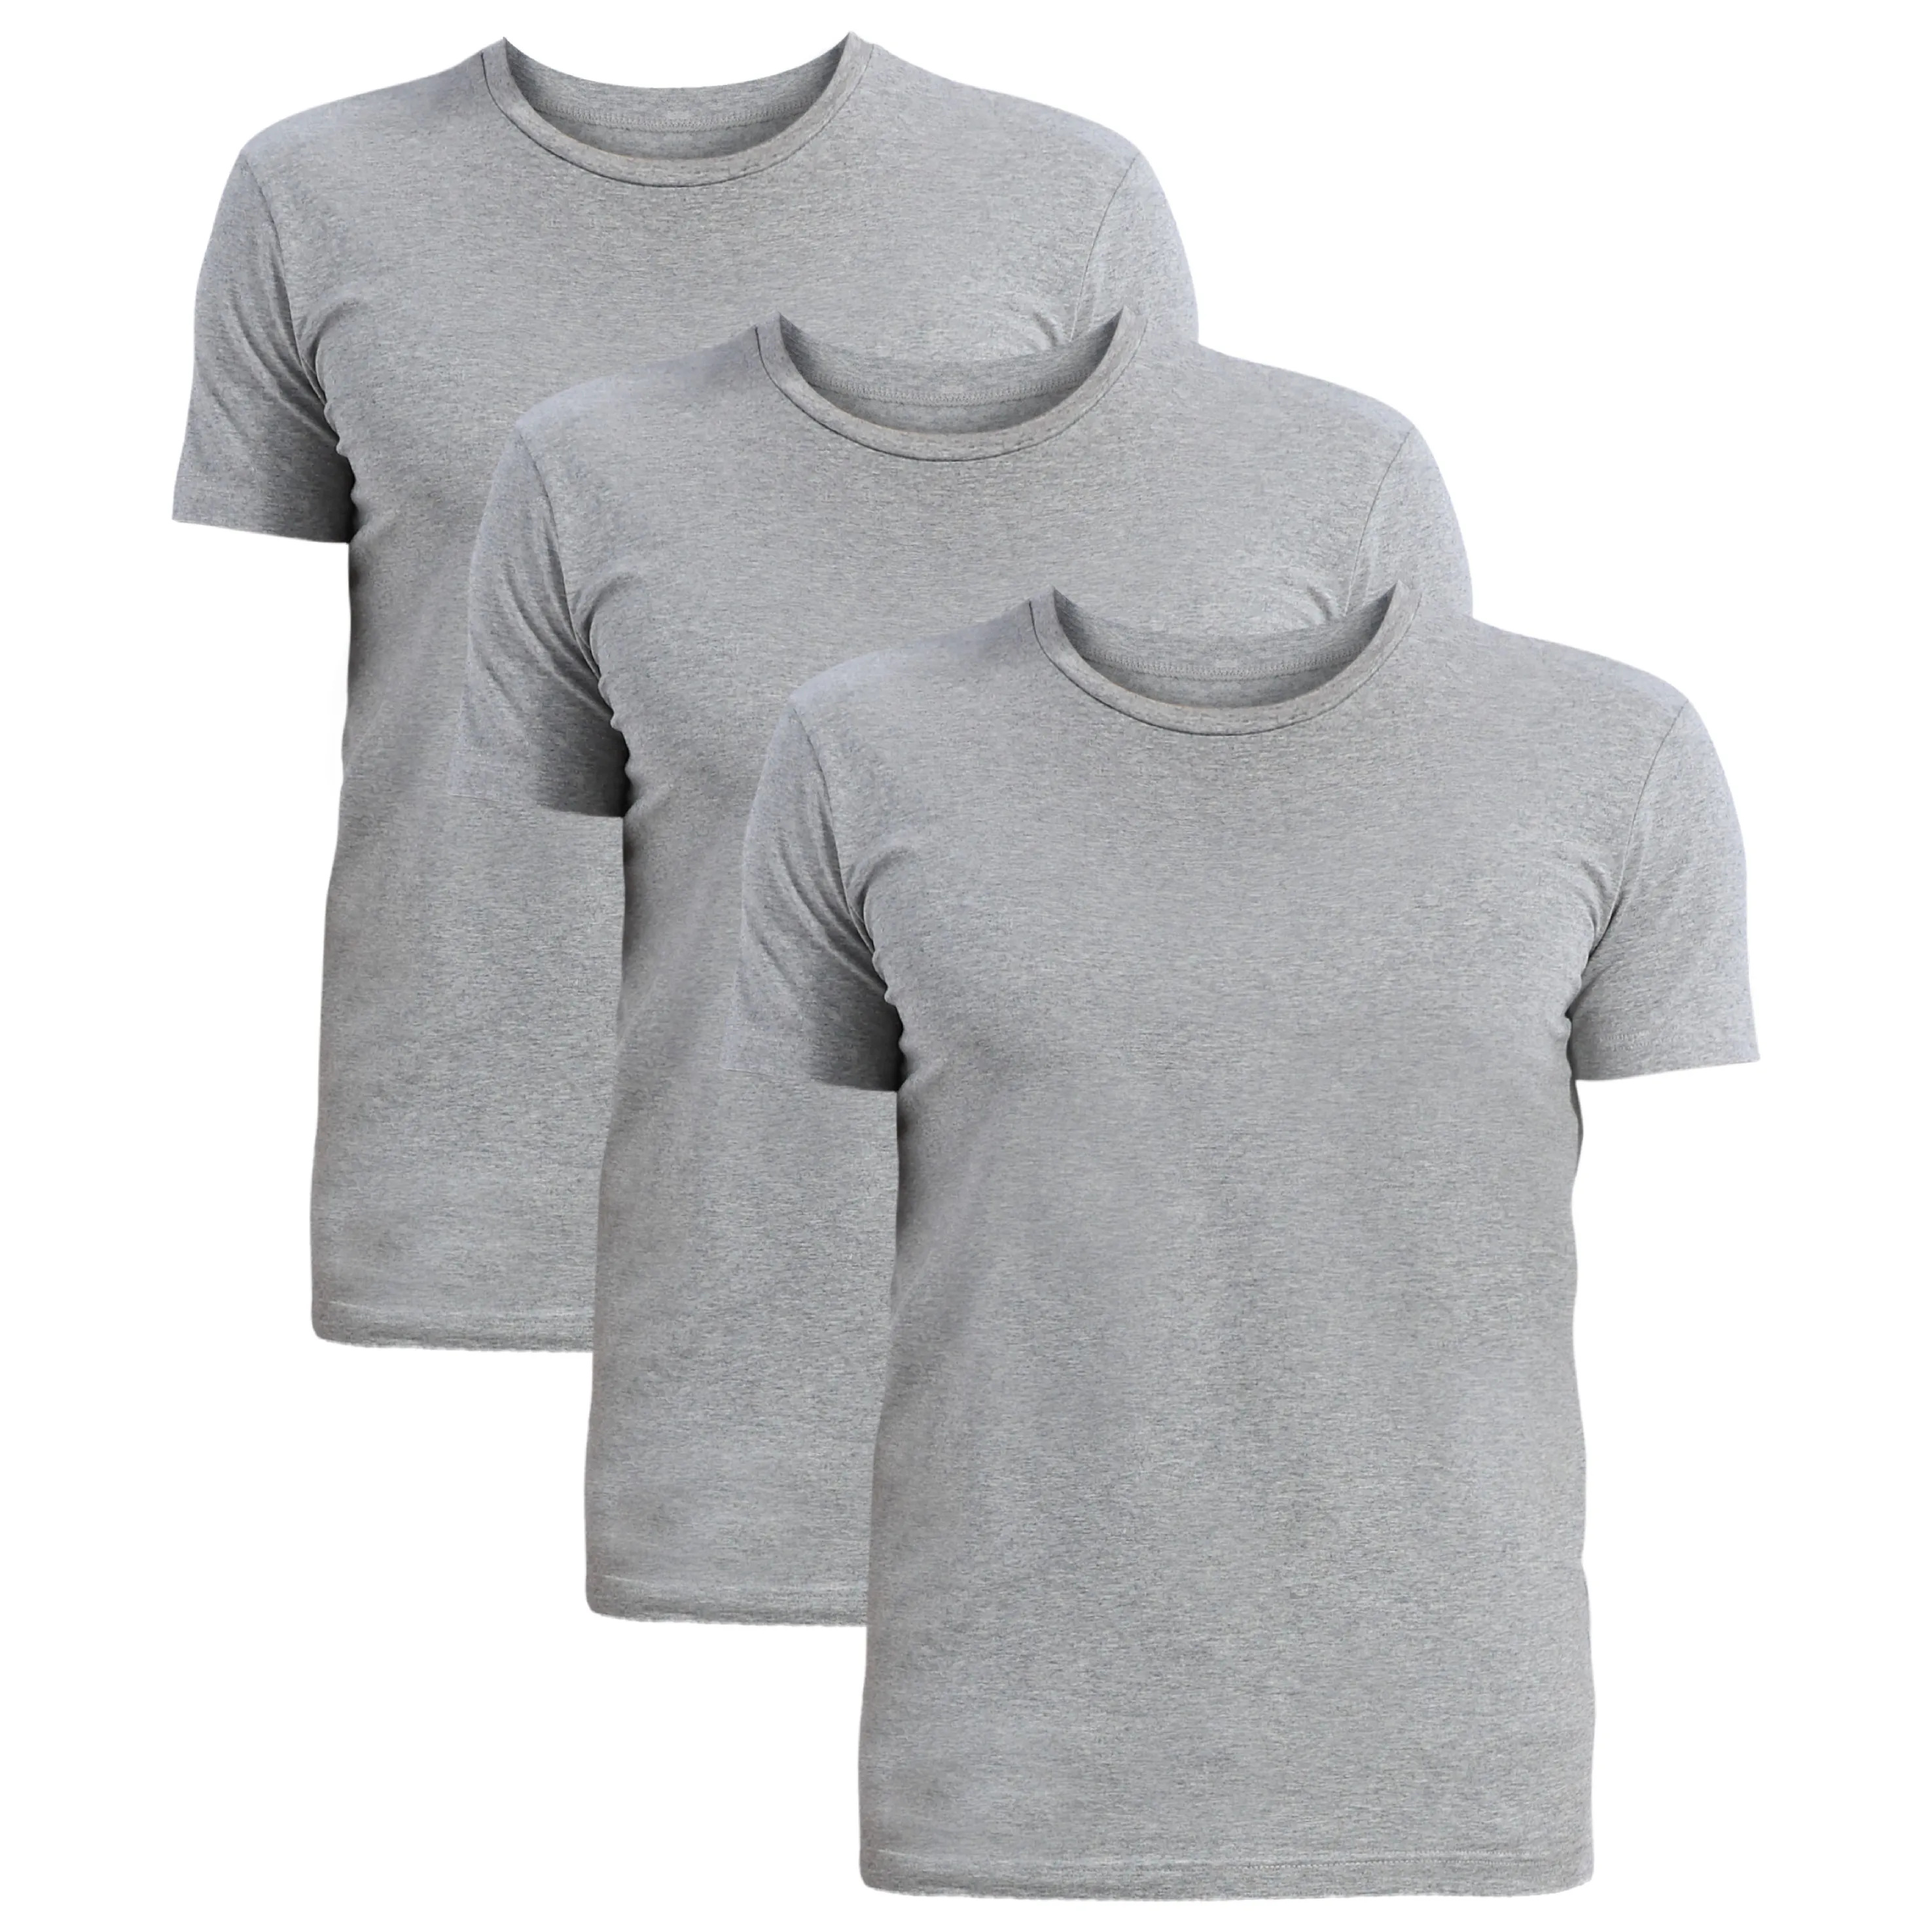 
wholesale Men round neck T-shirt v neck cotton soild color fitness men t-shirt 